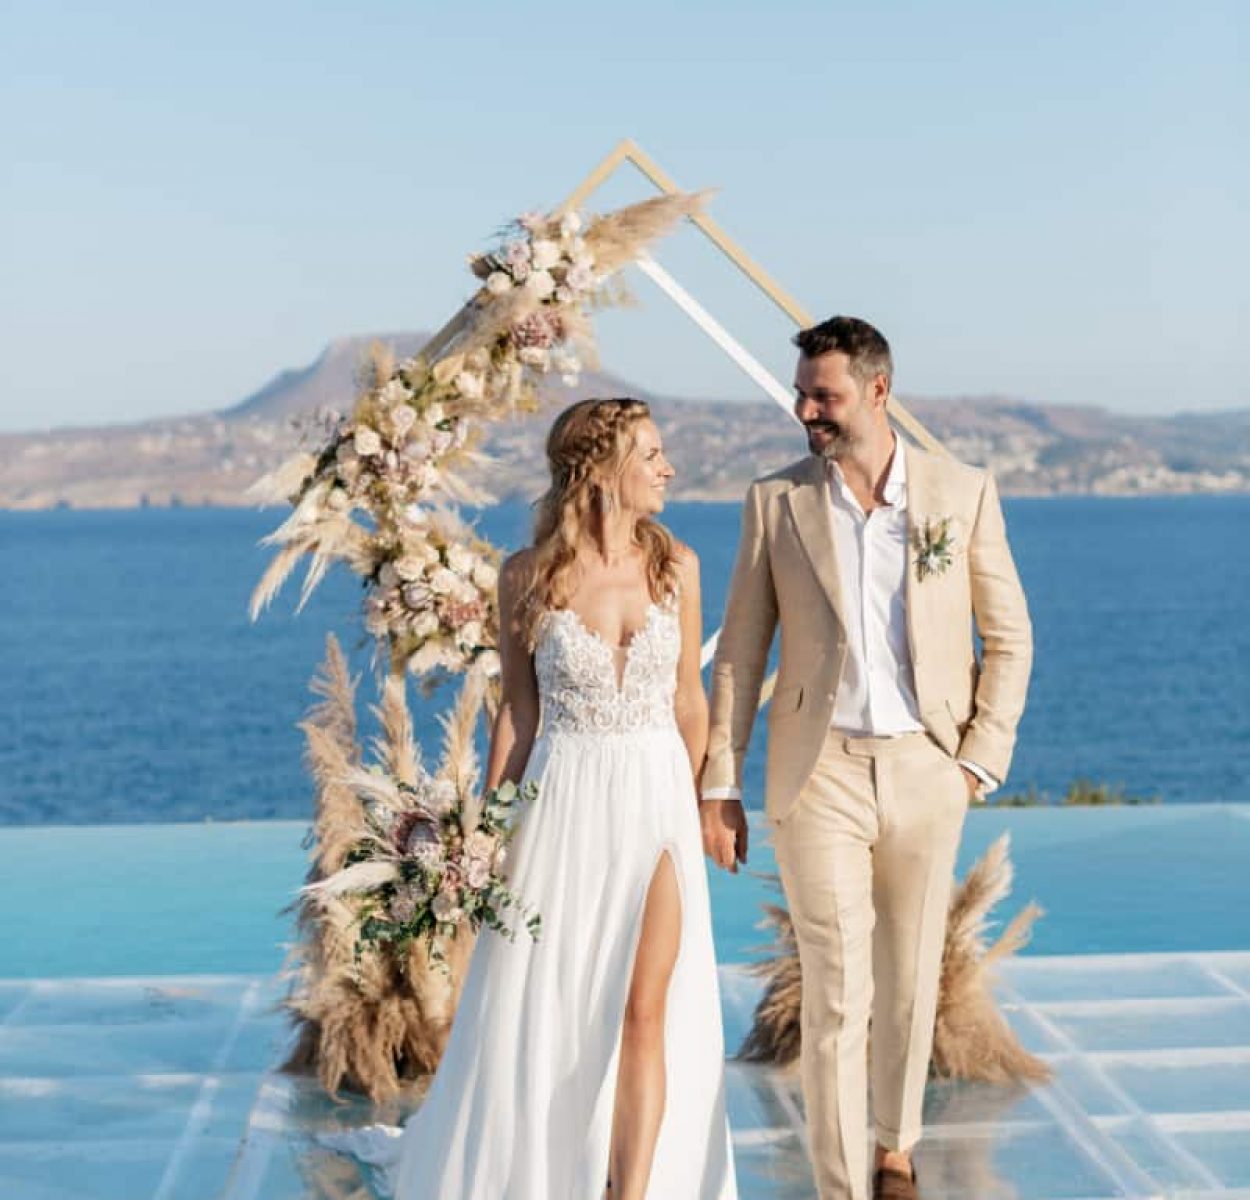 chic villa wedding crete gamos crete greece wedding planner merle phil 0301 1